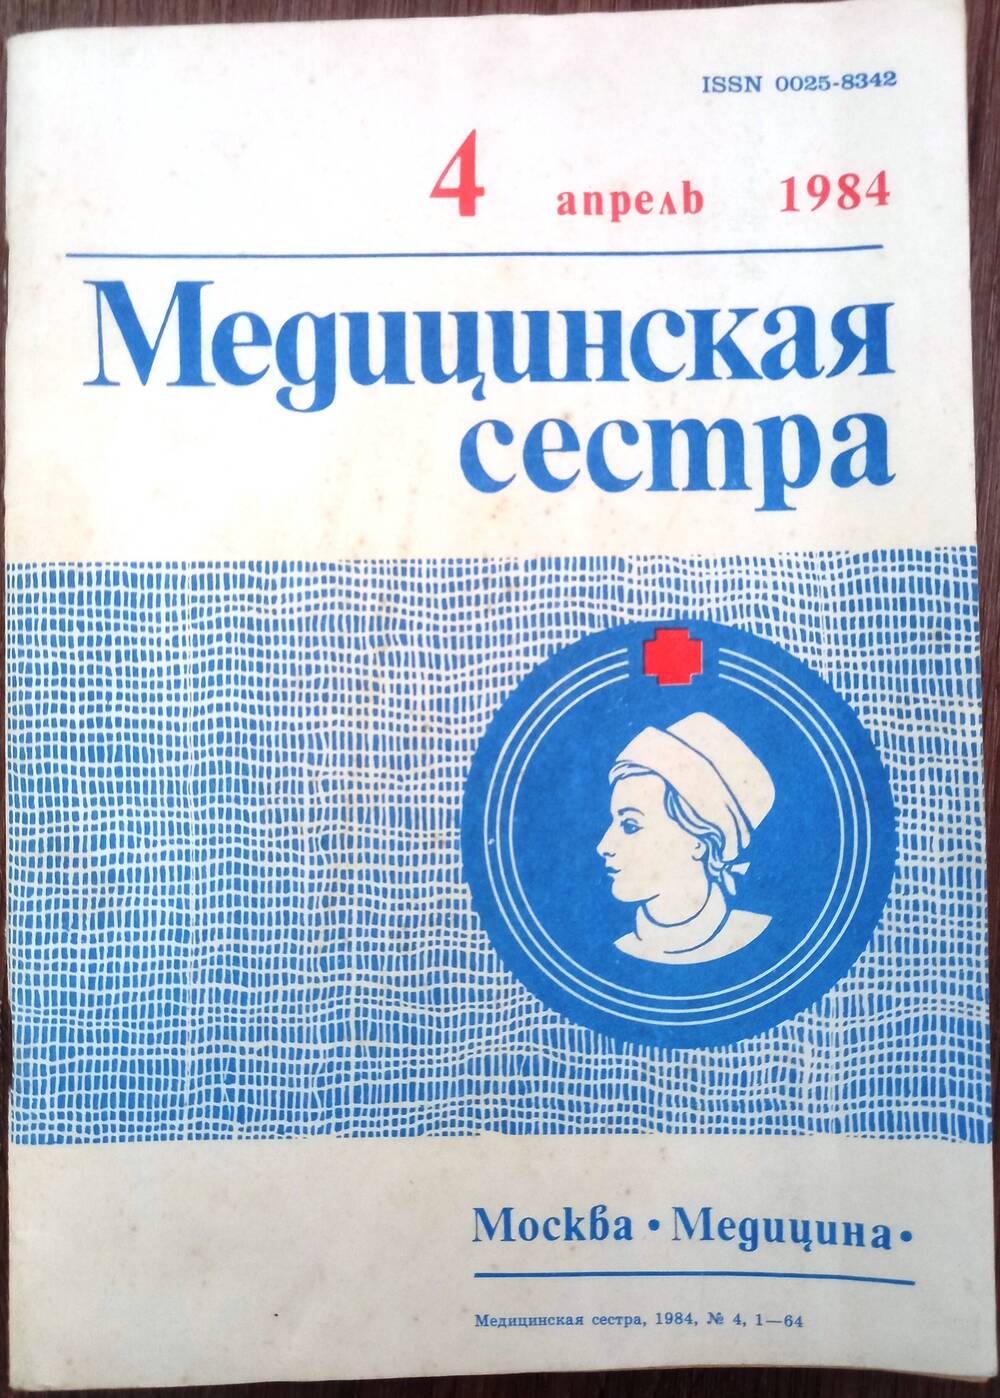 Журнал «МЕДИЦИНСКАЯ СЕСТРА»  № 4 1984 г. выпуска.